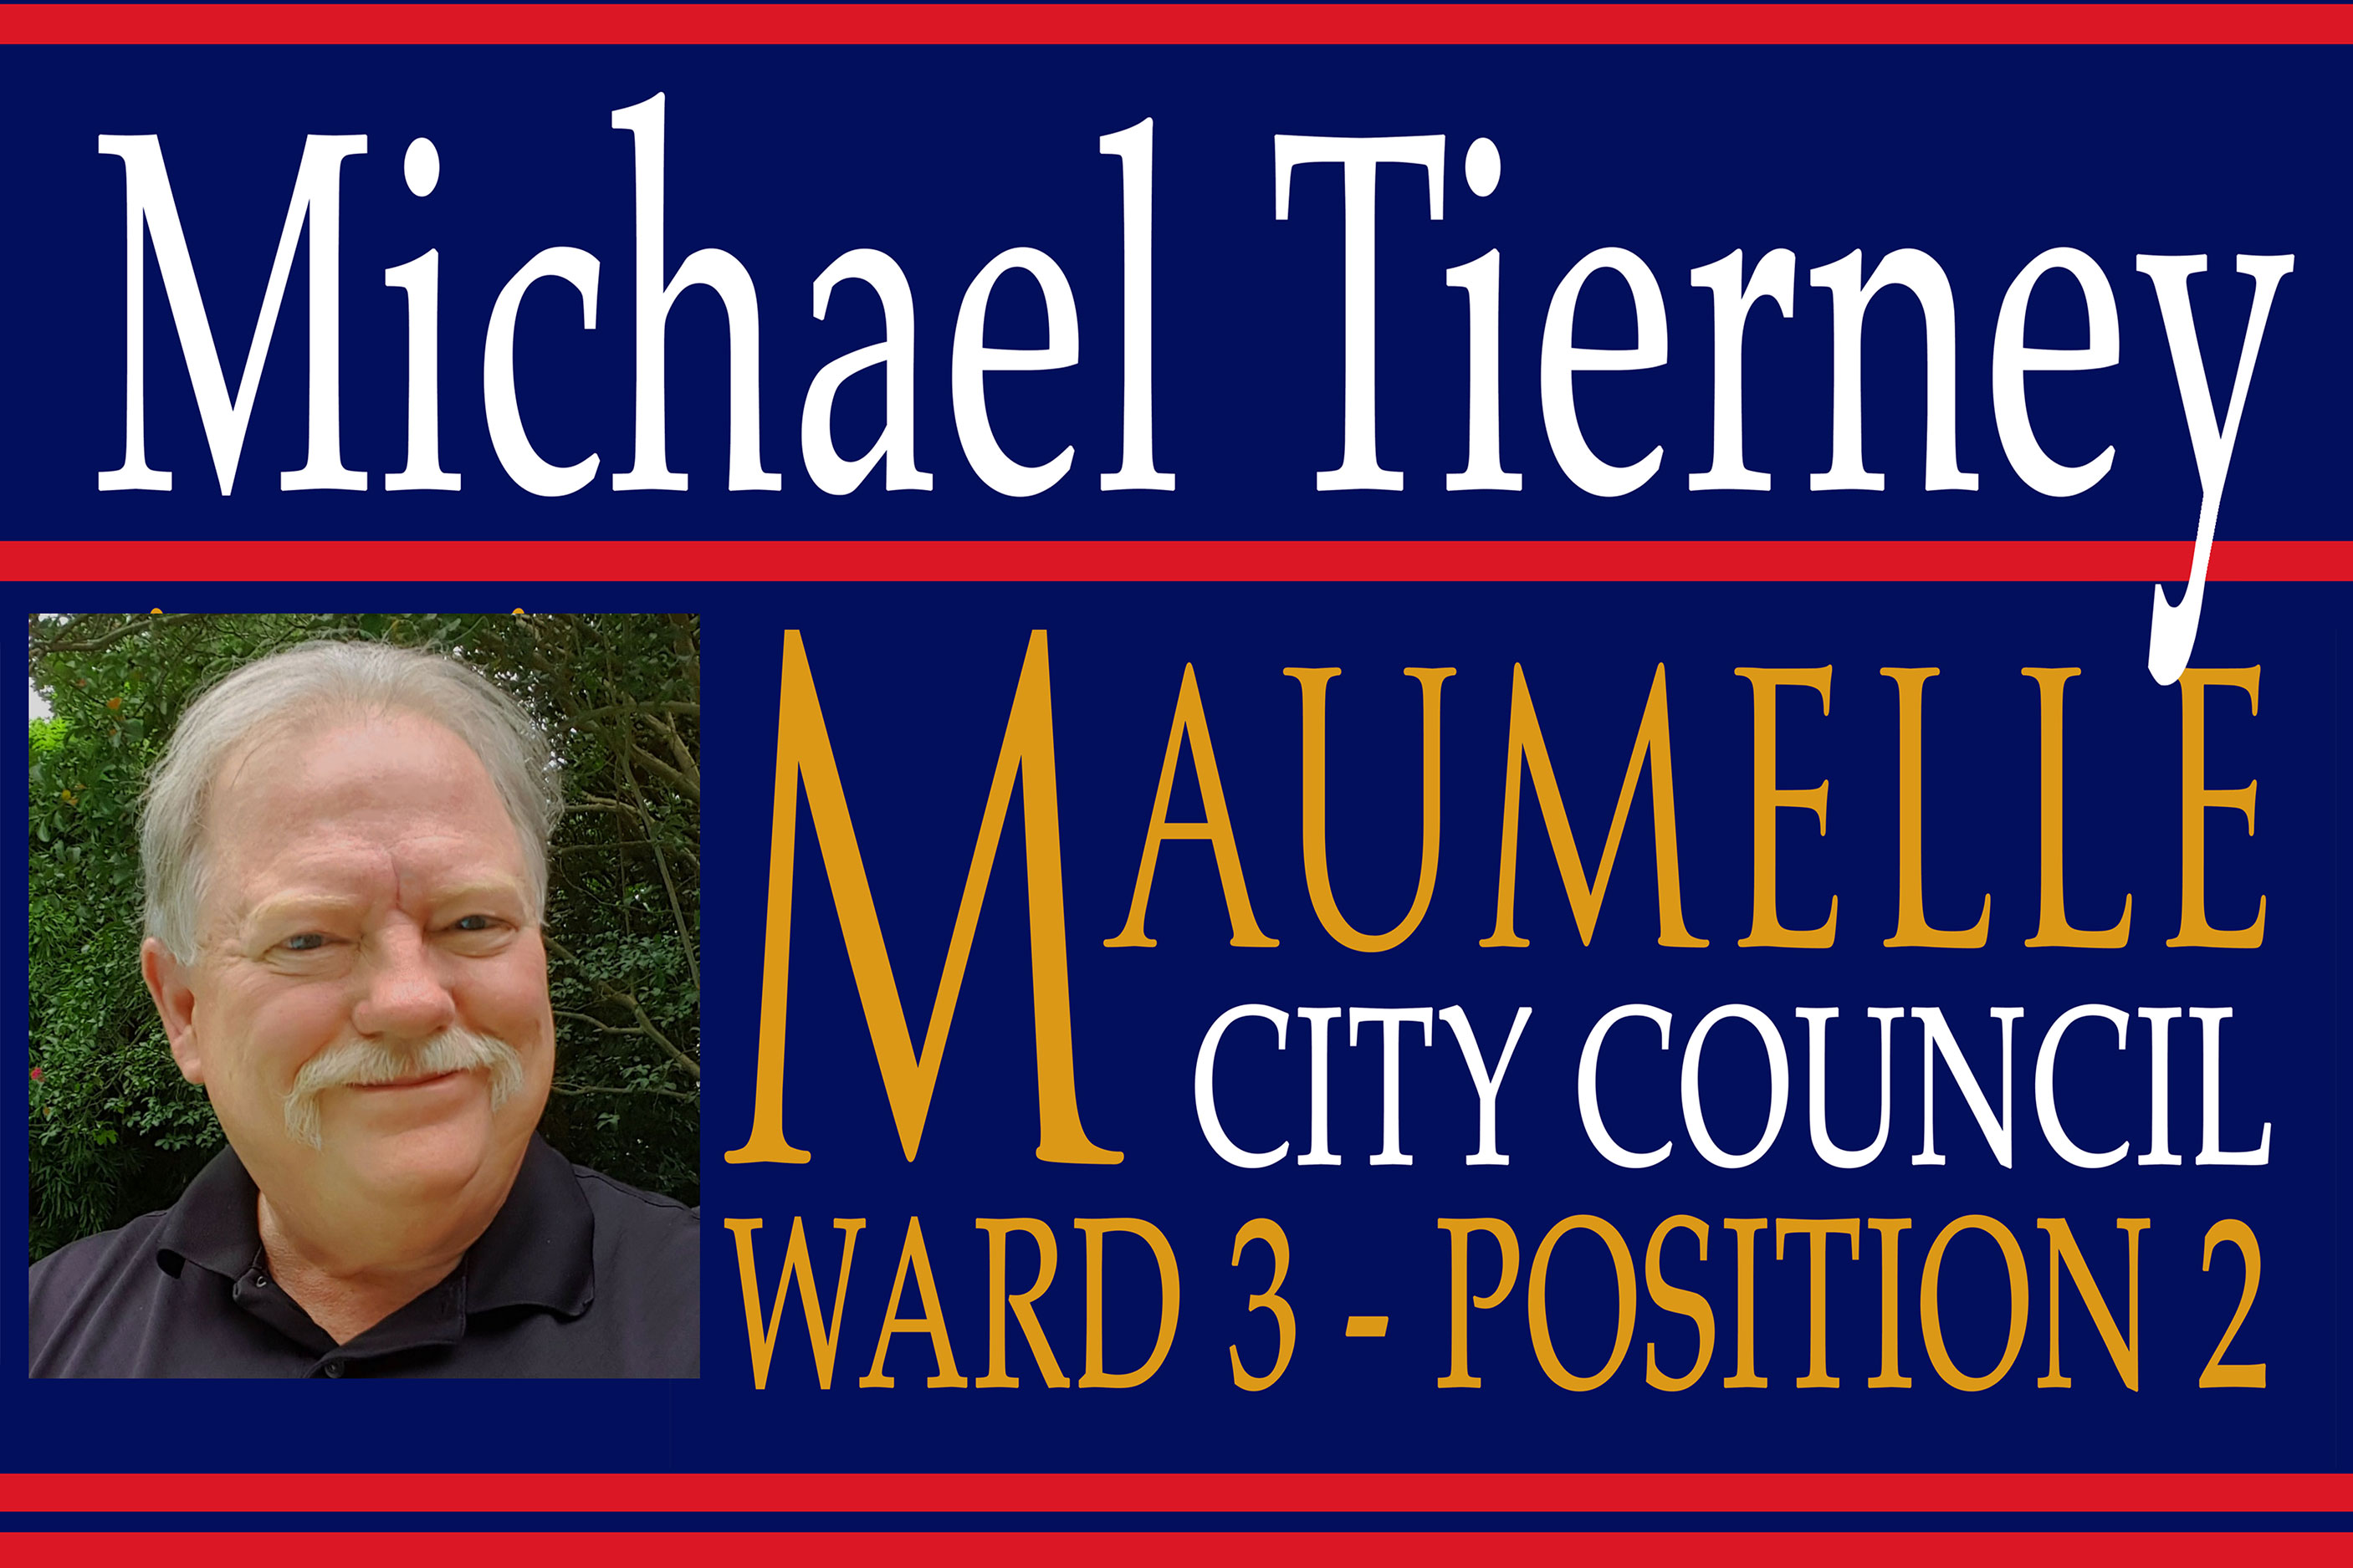 Michael for Maumelle City Council